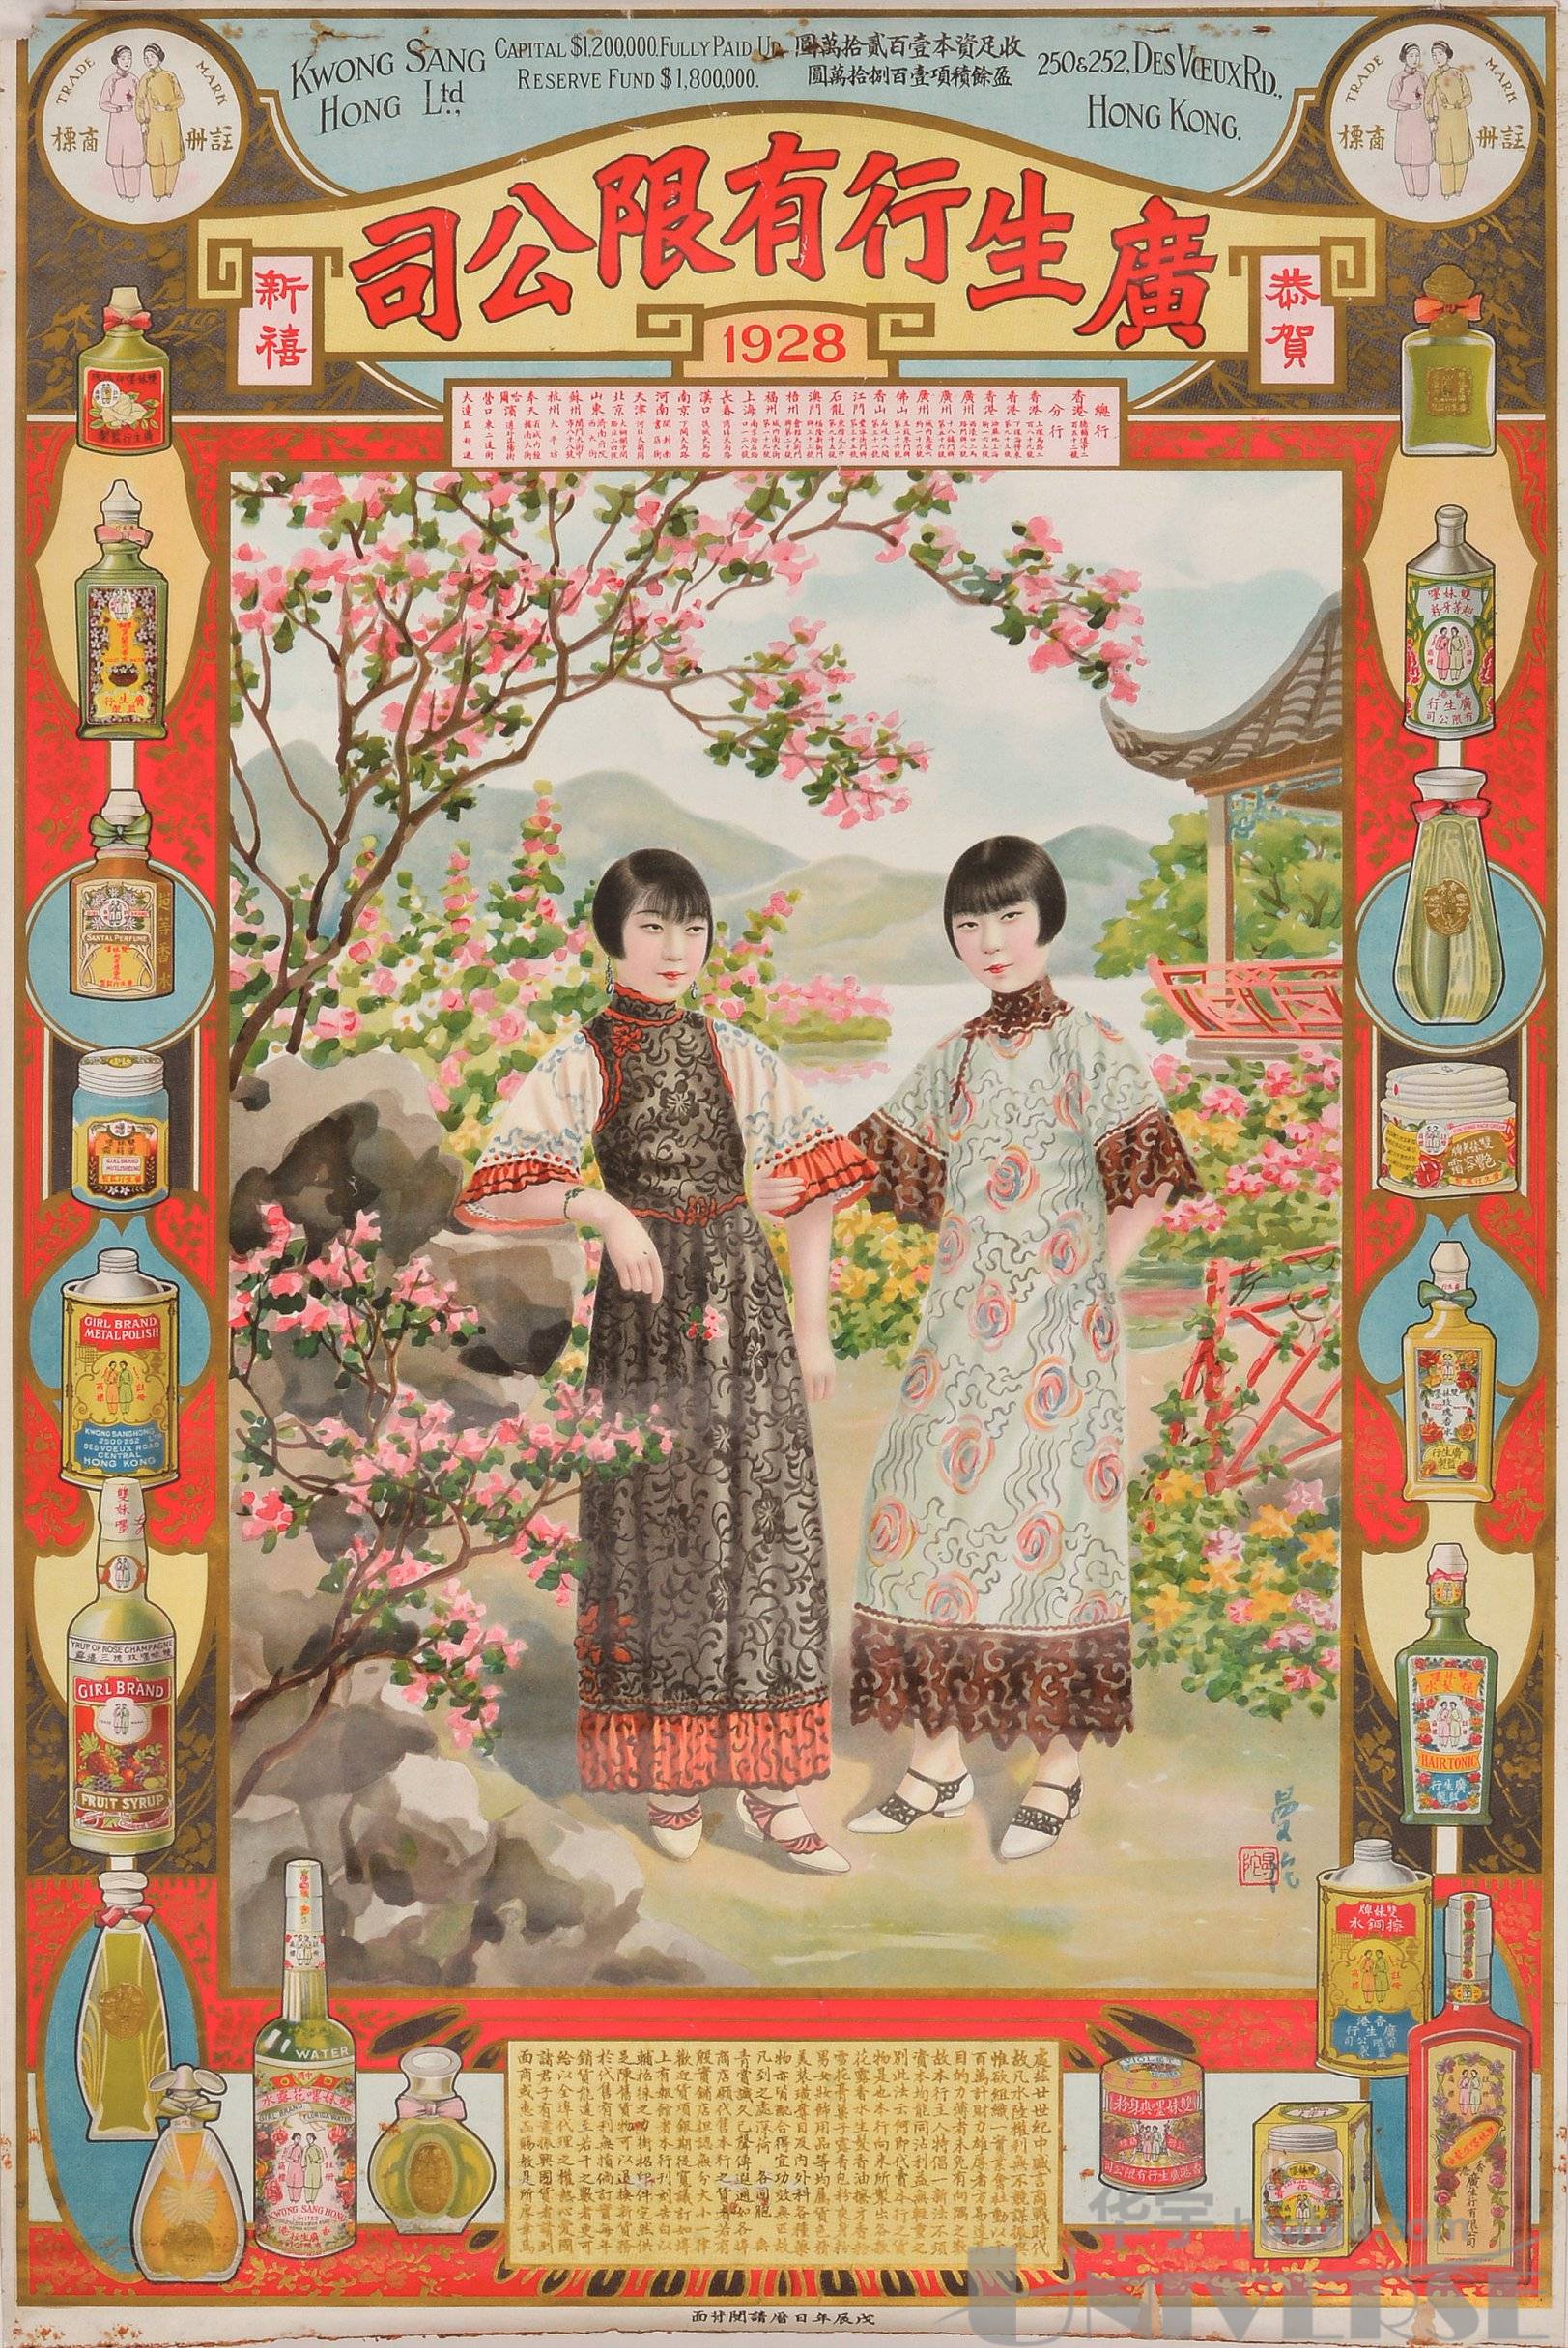 lot 5713 - 民国十七年(1928年)广生行有限公司美女月份牌广告画一张